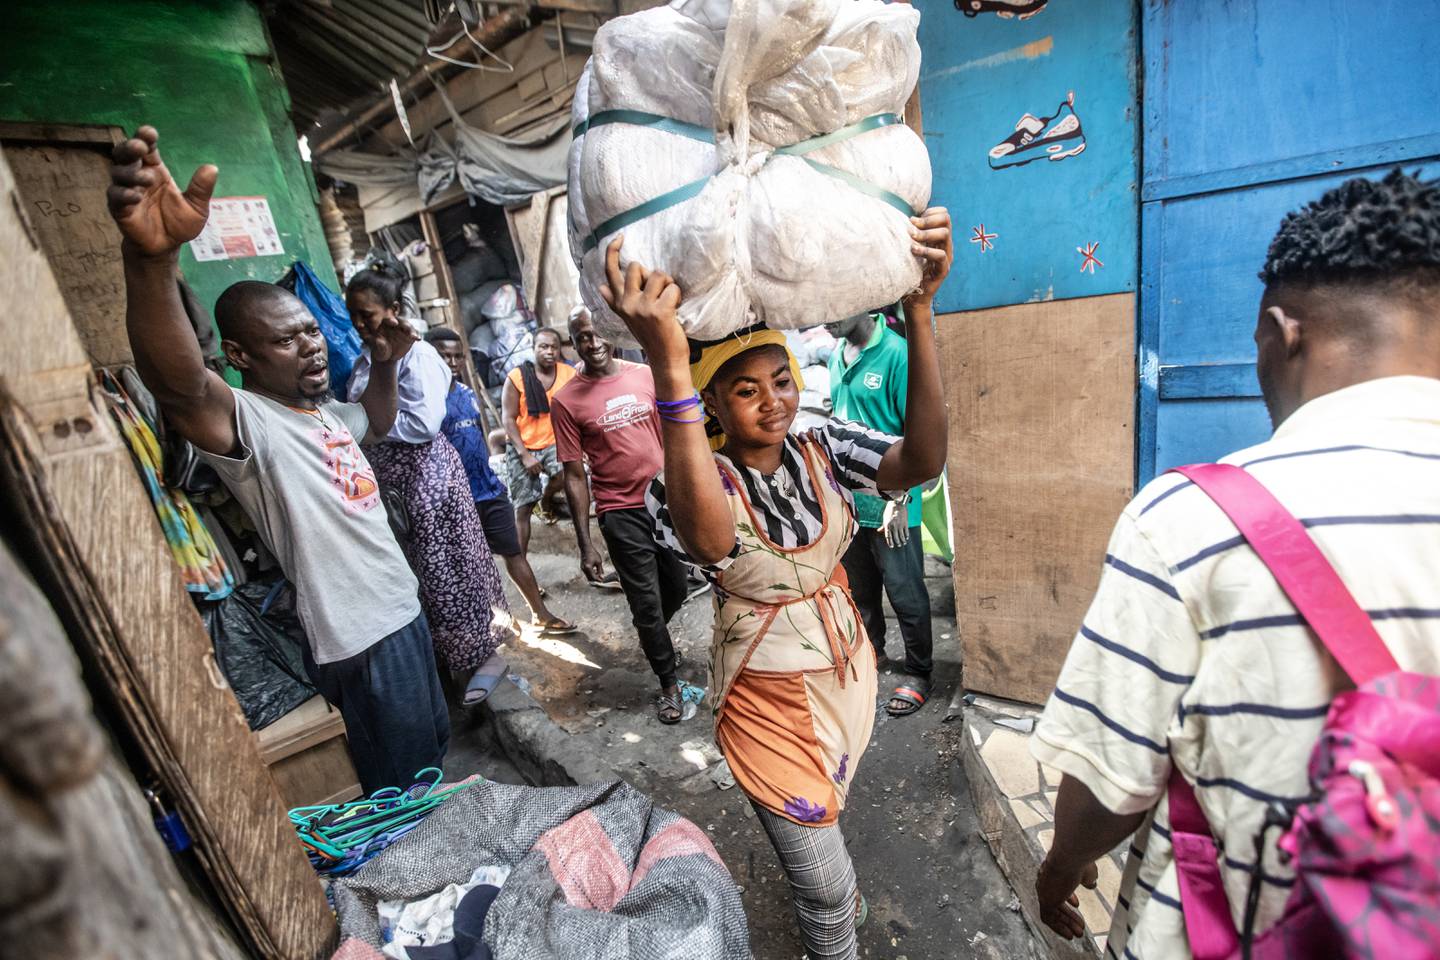 HARDT ARBEID: 21 år gamle Latifa Soule jobber som kayayei på markedet. Jobben innebærer å bære tunge klesballer på hodet.